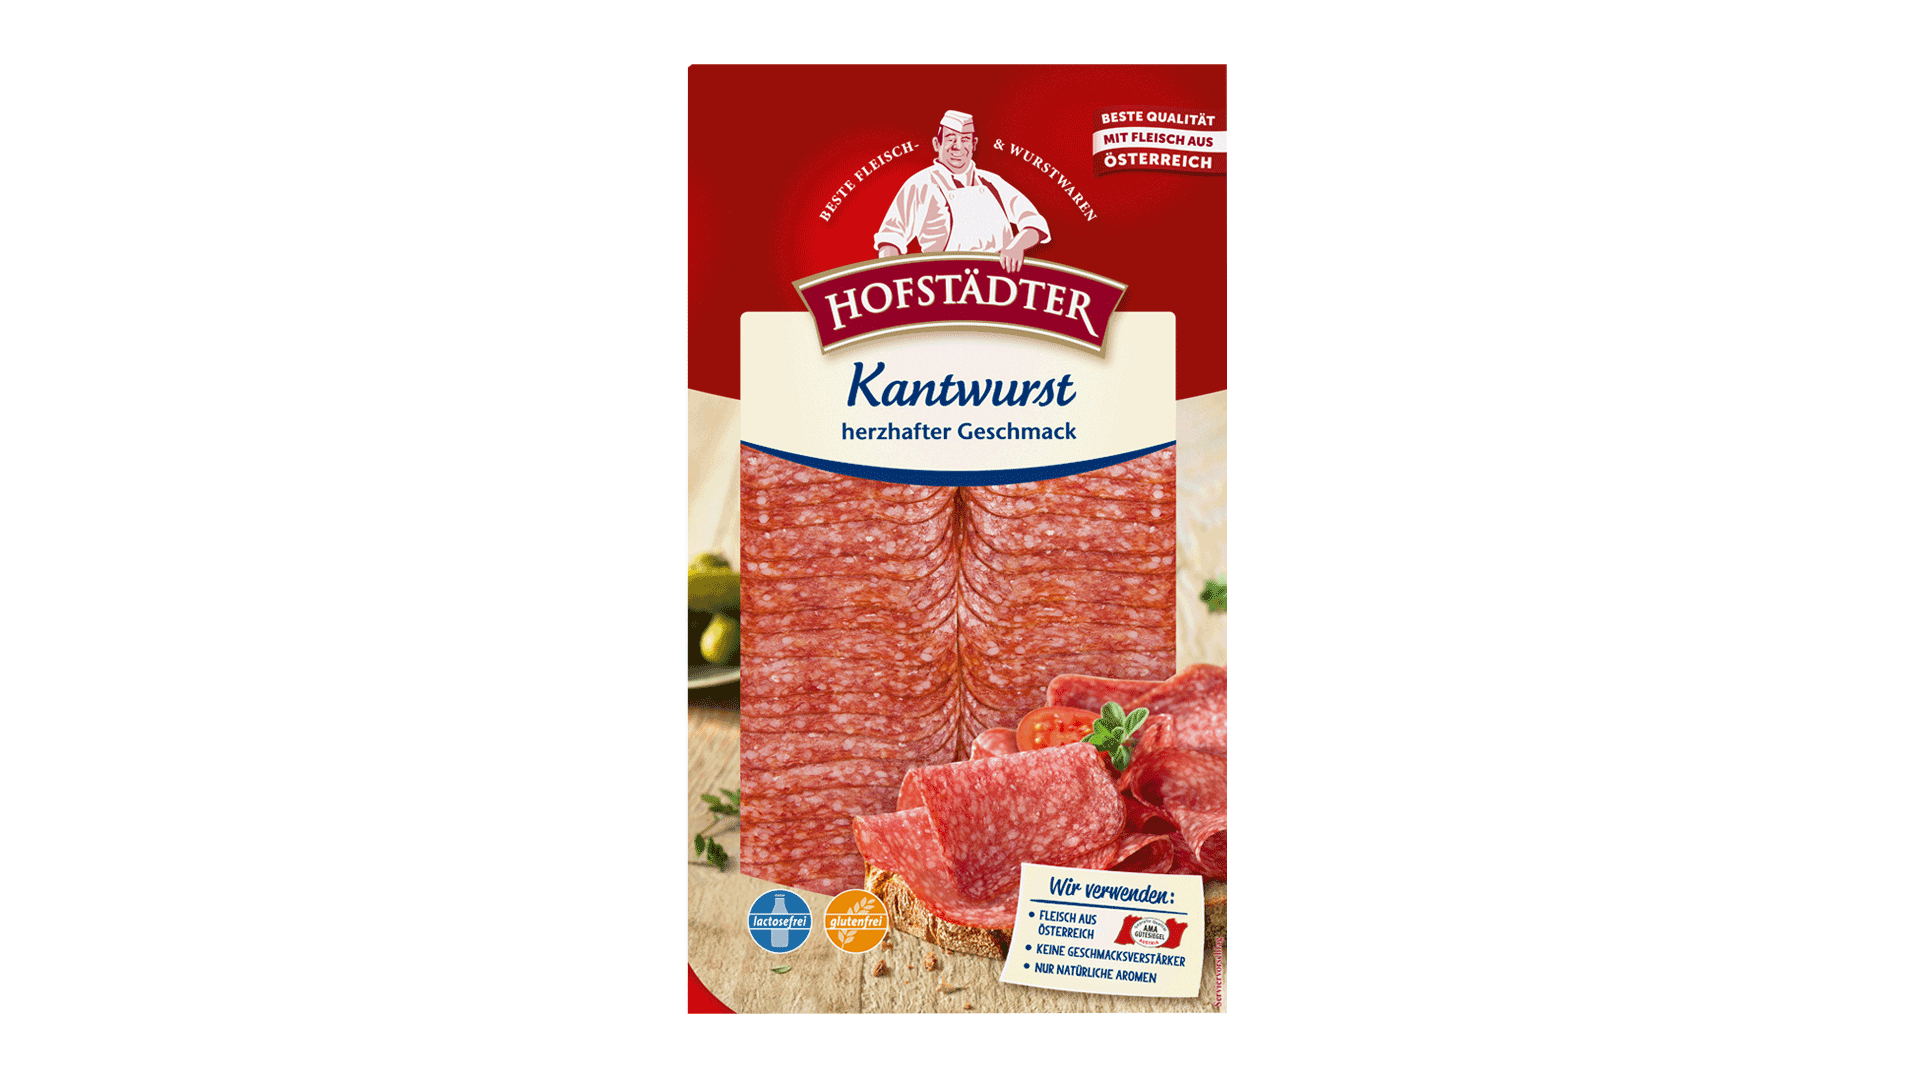 Hofstädter Kantwurst